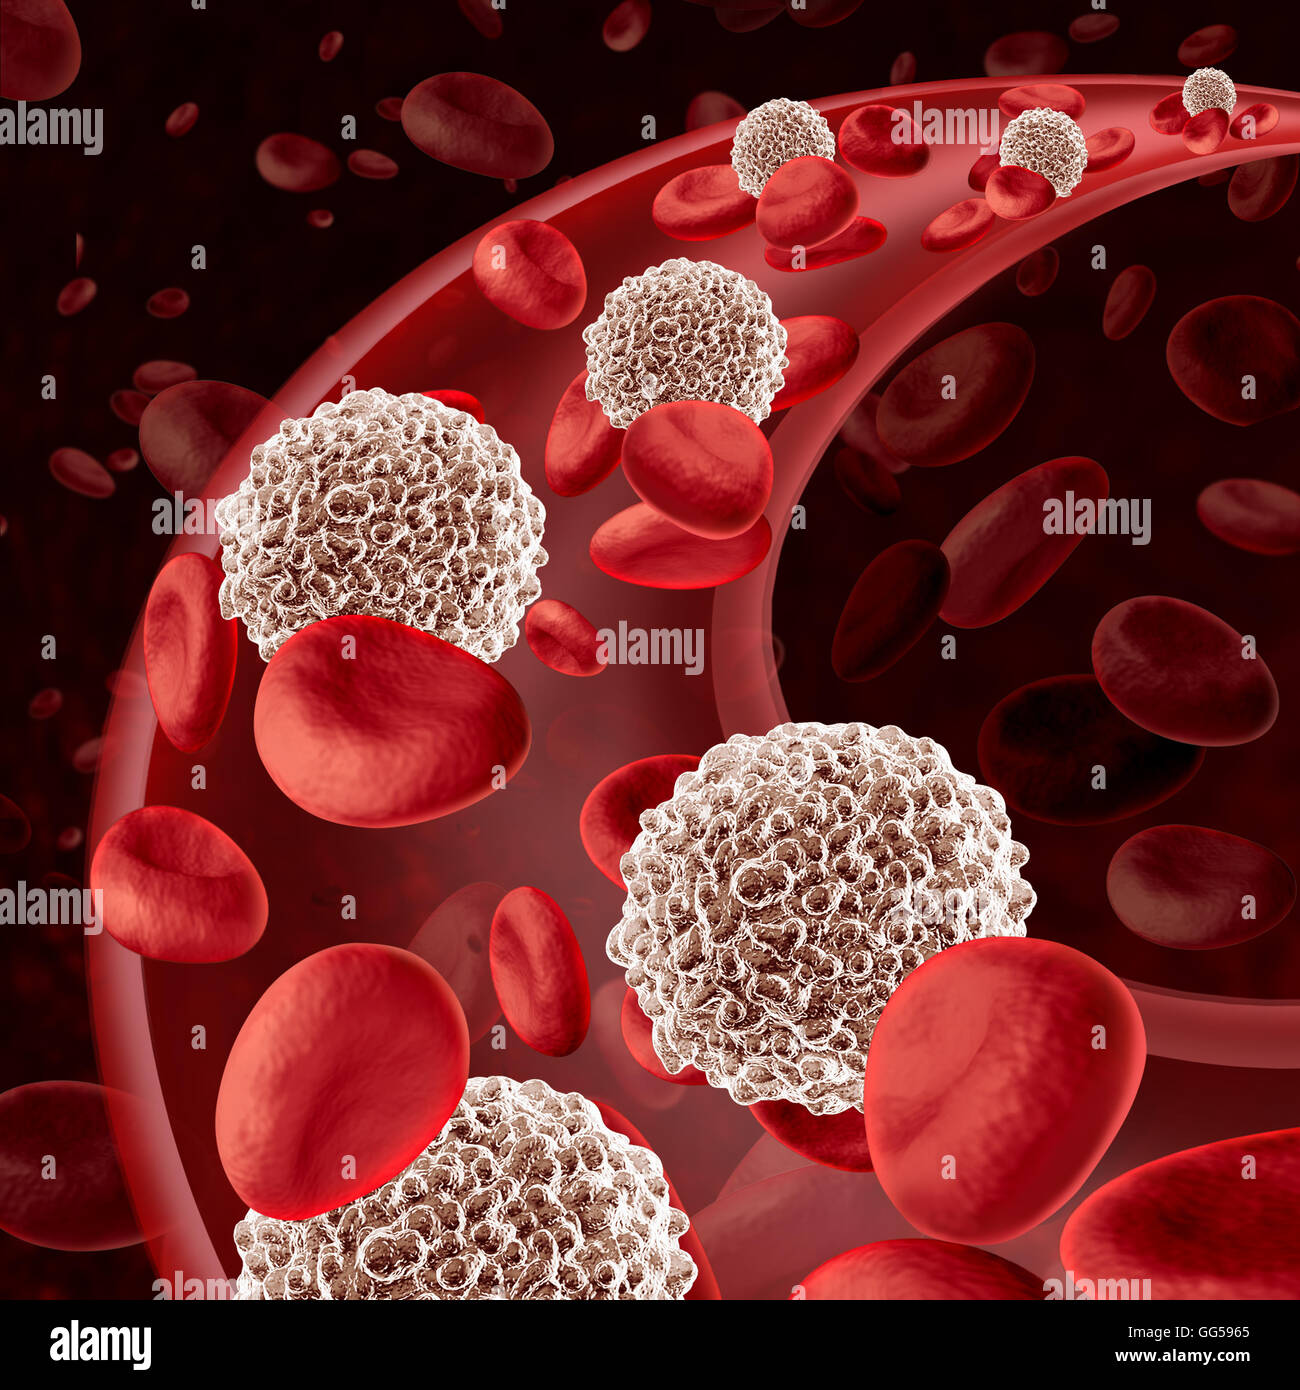 Weißen Blutkörperchen Kreislauf fließt als Mikrobiologie Verteidigung Symbol für das menschliche Immunsystem bekämpfen Infektionen zu verteidigen und schützen den menschlichen Körper von Infektionskrankheiten wie eine 3D Darstellung. Stockfoto